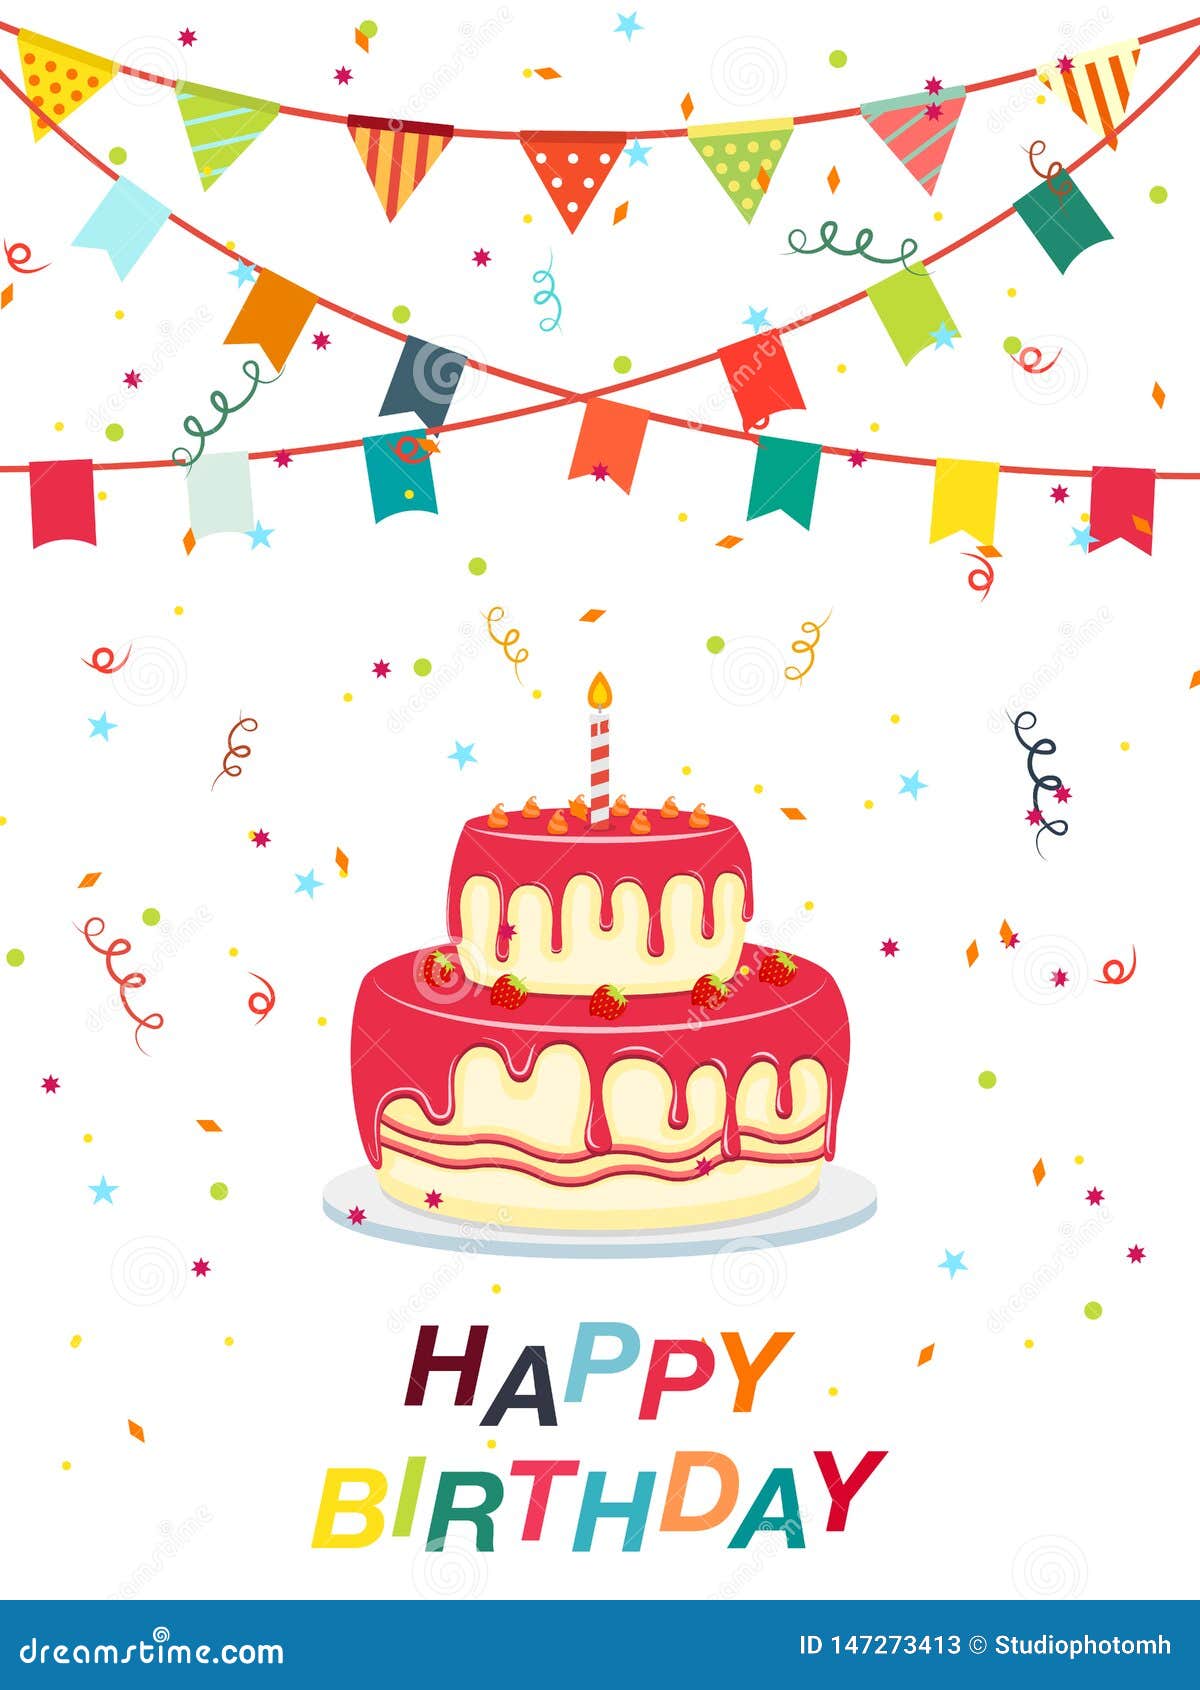 Bánh sinh nhật - Với hình ảnh bánh sinh nhật đẹp, tươi sáng và hấp dẫn, bạn sẽ chắc chắn bị lôi cuốn và muốn thưởng thức chiếc bánh ngọt ngào đóng vai trò quan trọng trong mỗi bữa tiệc sinh nhật. Ghé thăm trang web của chúng tôi để tìm được chiếc bánh sinh nhật hoàn hảo cho bữa tiệc của mình.